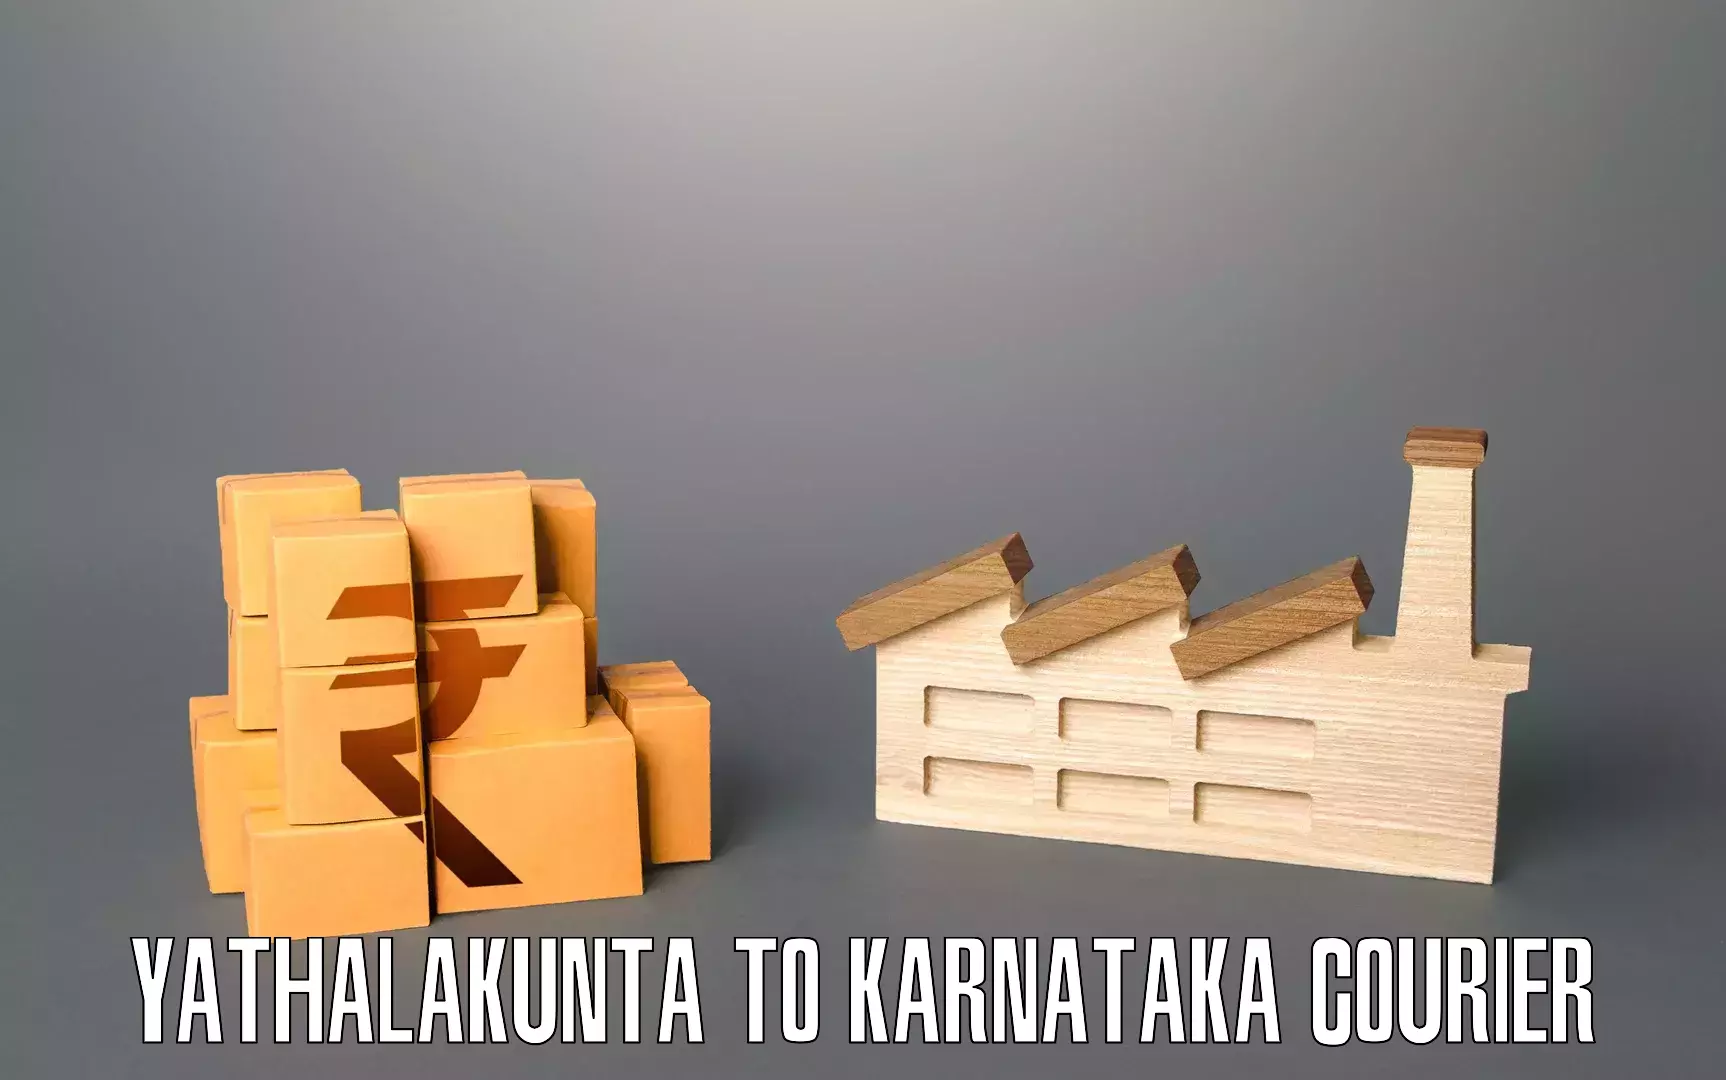 Dependable moving services Yathalakunta to Basavana Bagewadi